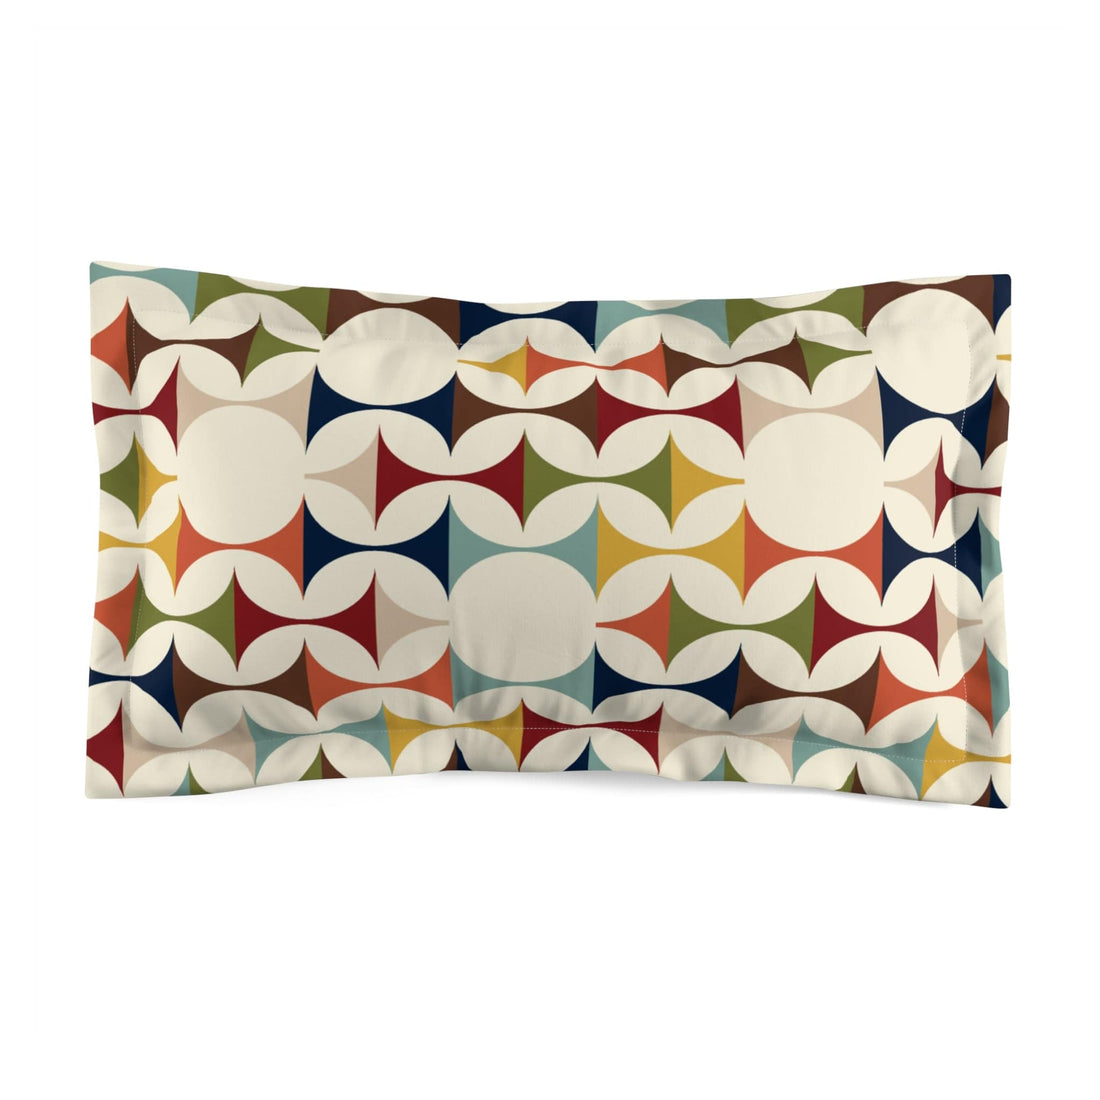 Kate McEnroe New York Retro MCM Pillow Sham, Mid Century Geometric Design, Scandinavian Danish Modern Bedroom Decor Pillow Shams King 47058539290145501765